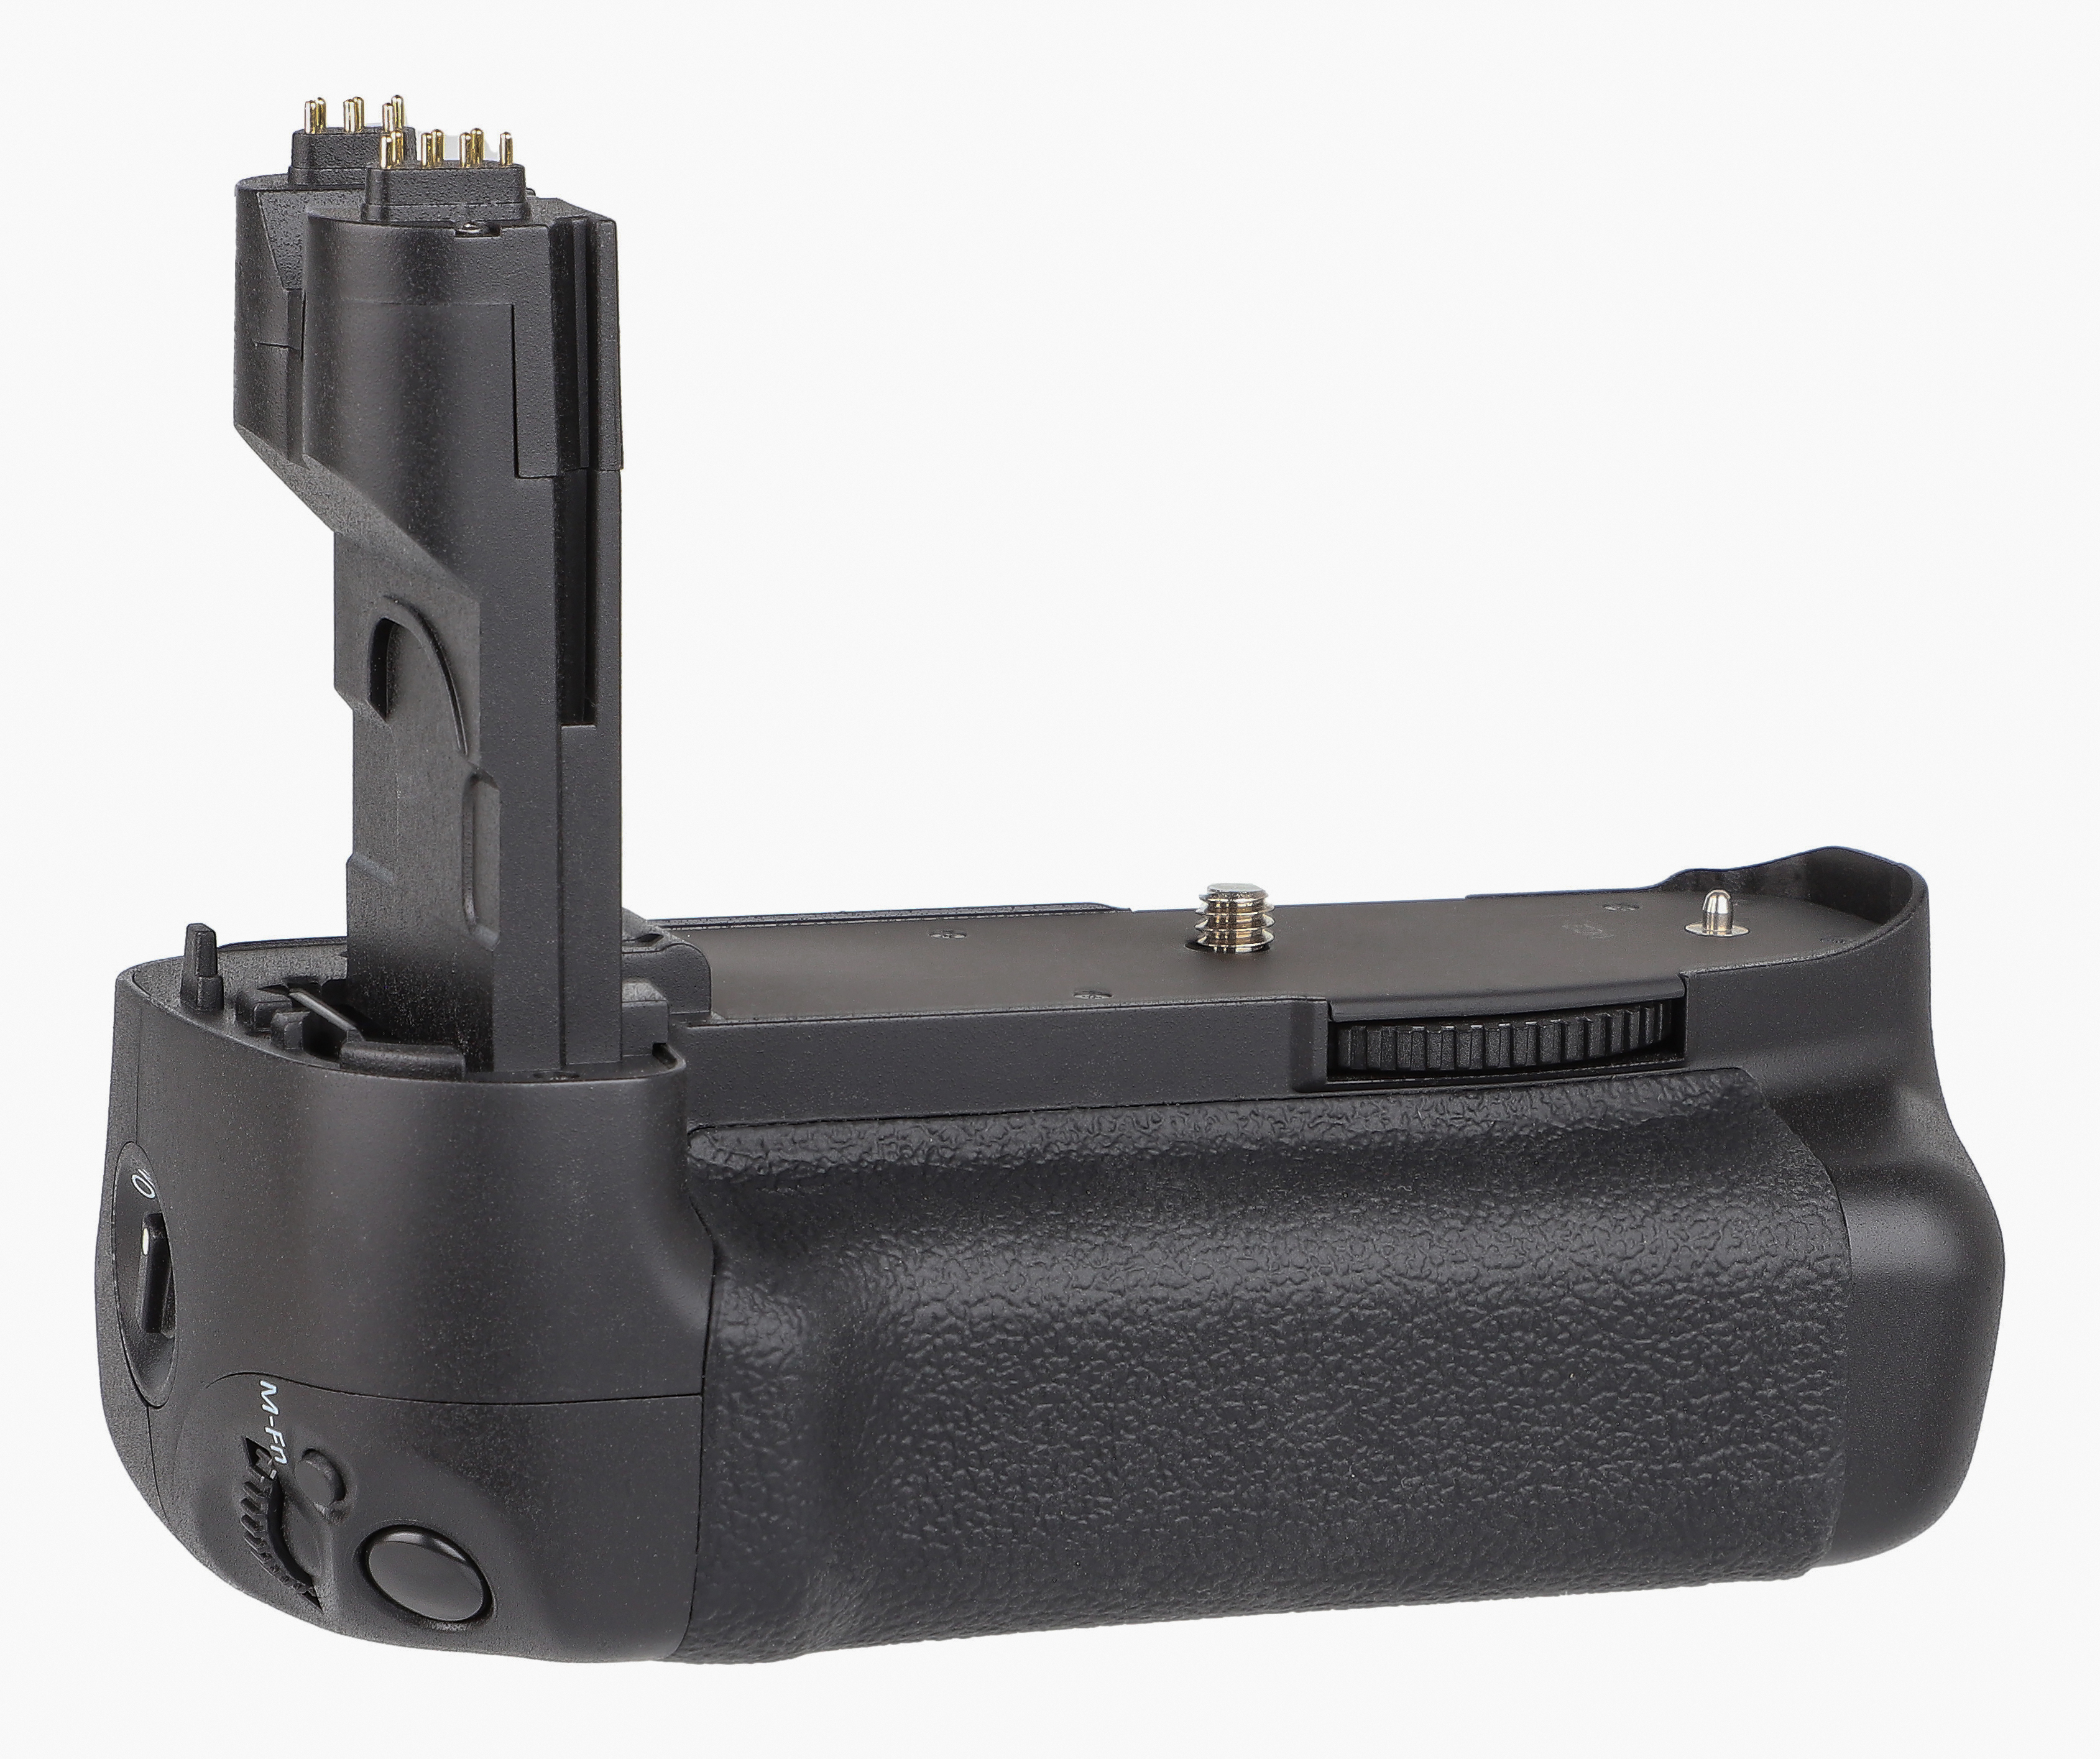 ayex Batteriegriff für Canon EOS 7D wie BG-E7 mit Hochformatauslöser und vielen Funktionen